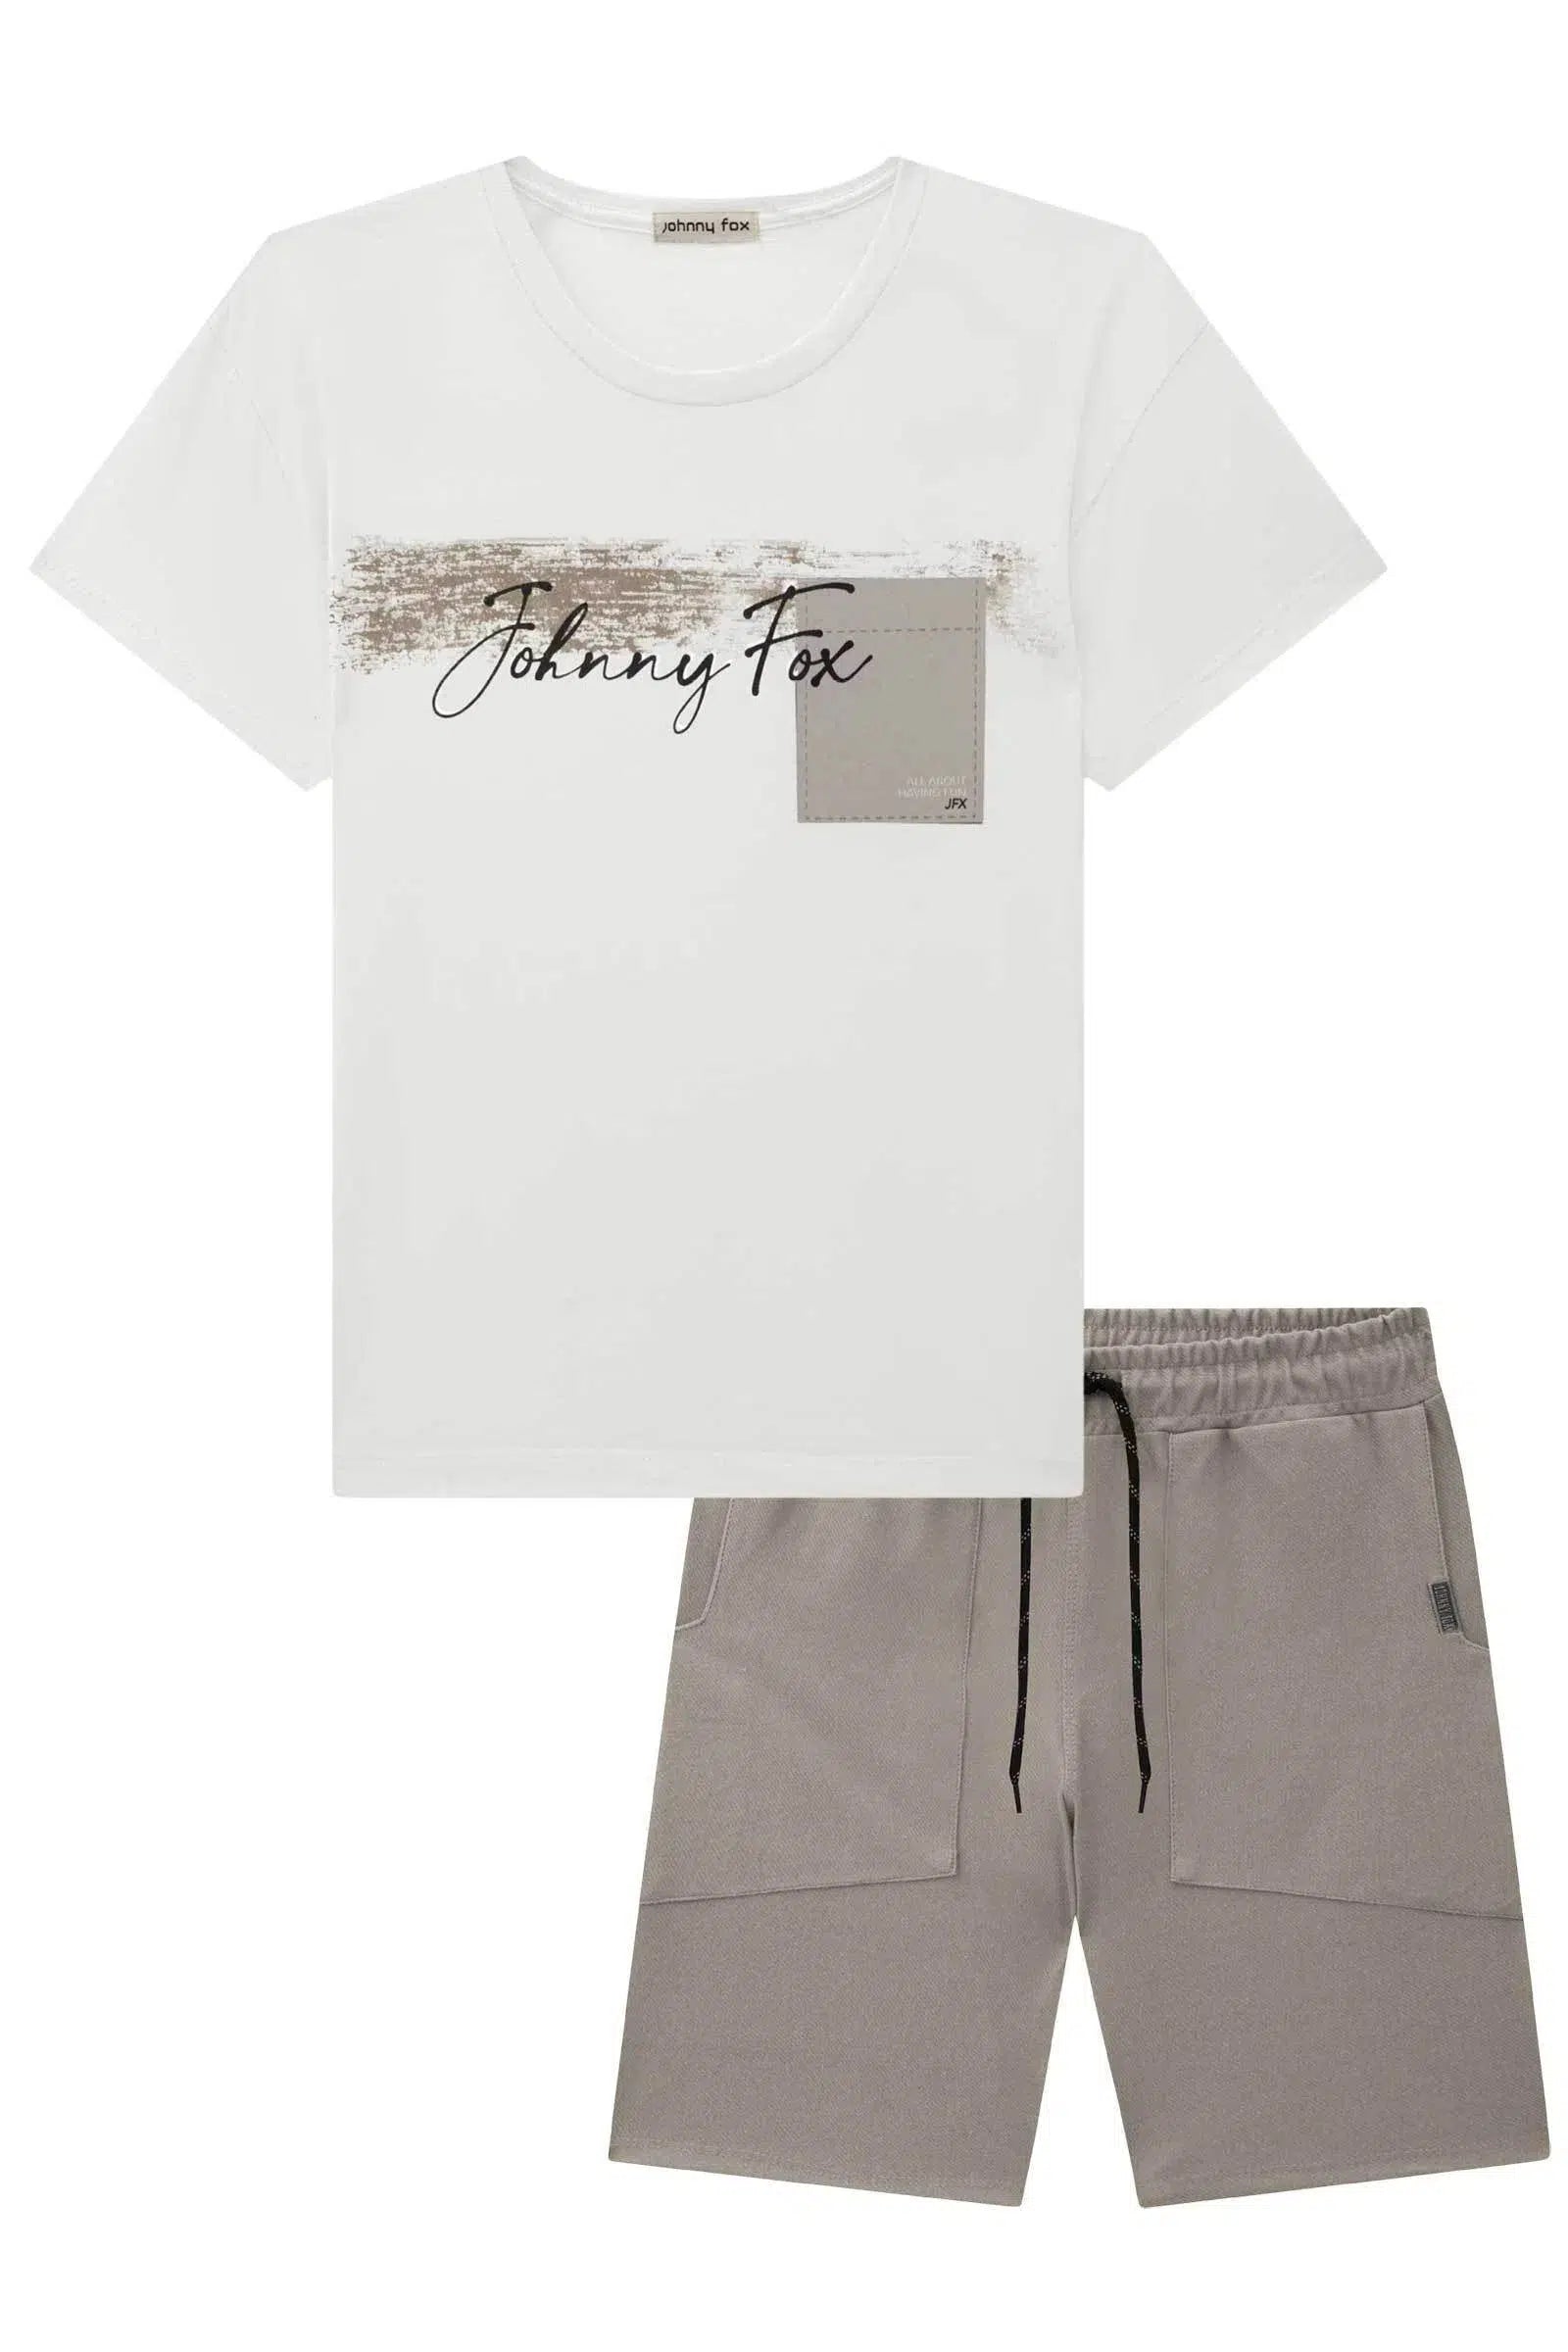 Conjunto de Camiseta em Meia Malha e Bermuda em Cotton Jeans com Elastano 72405 Johnny Fox